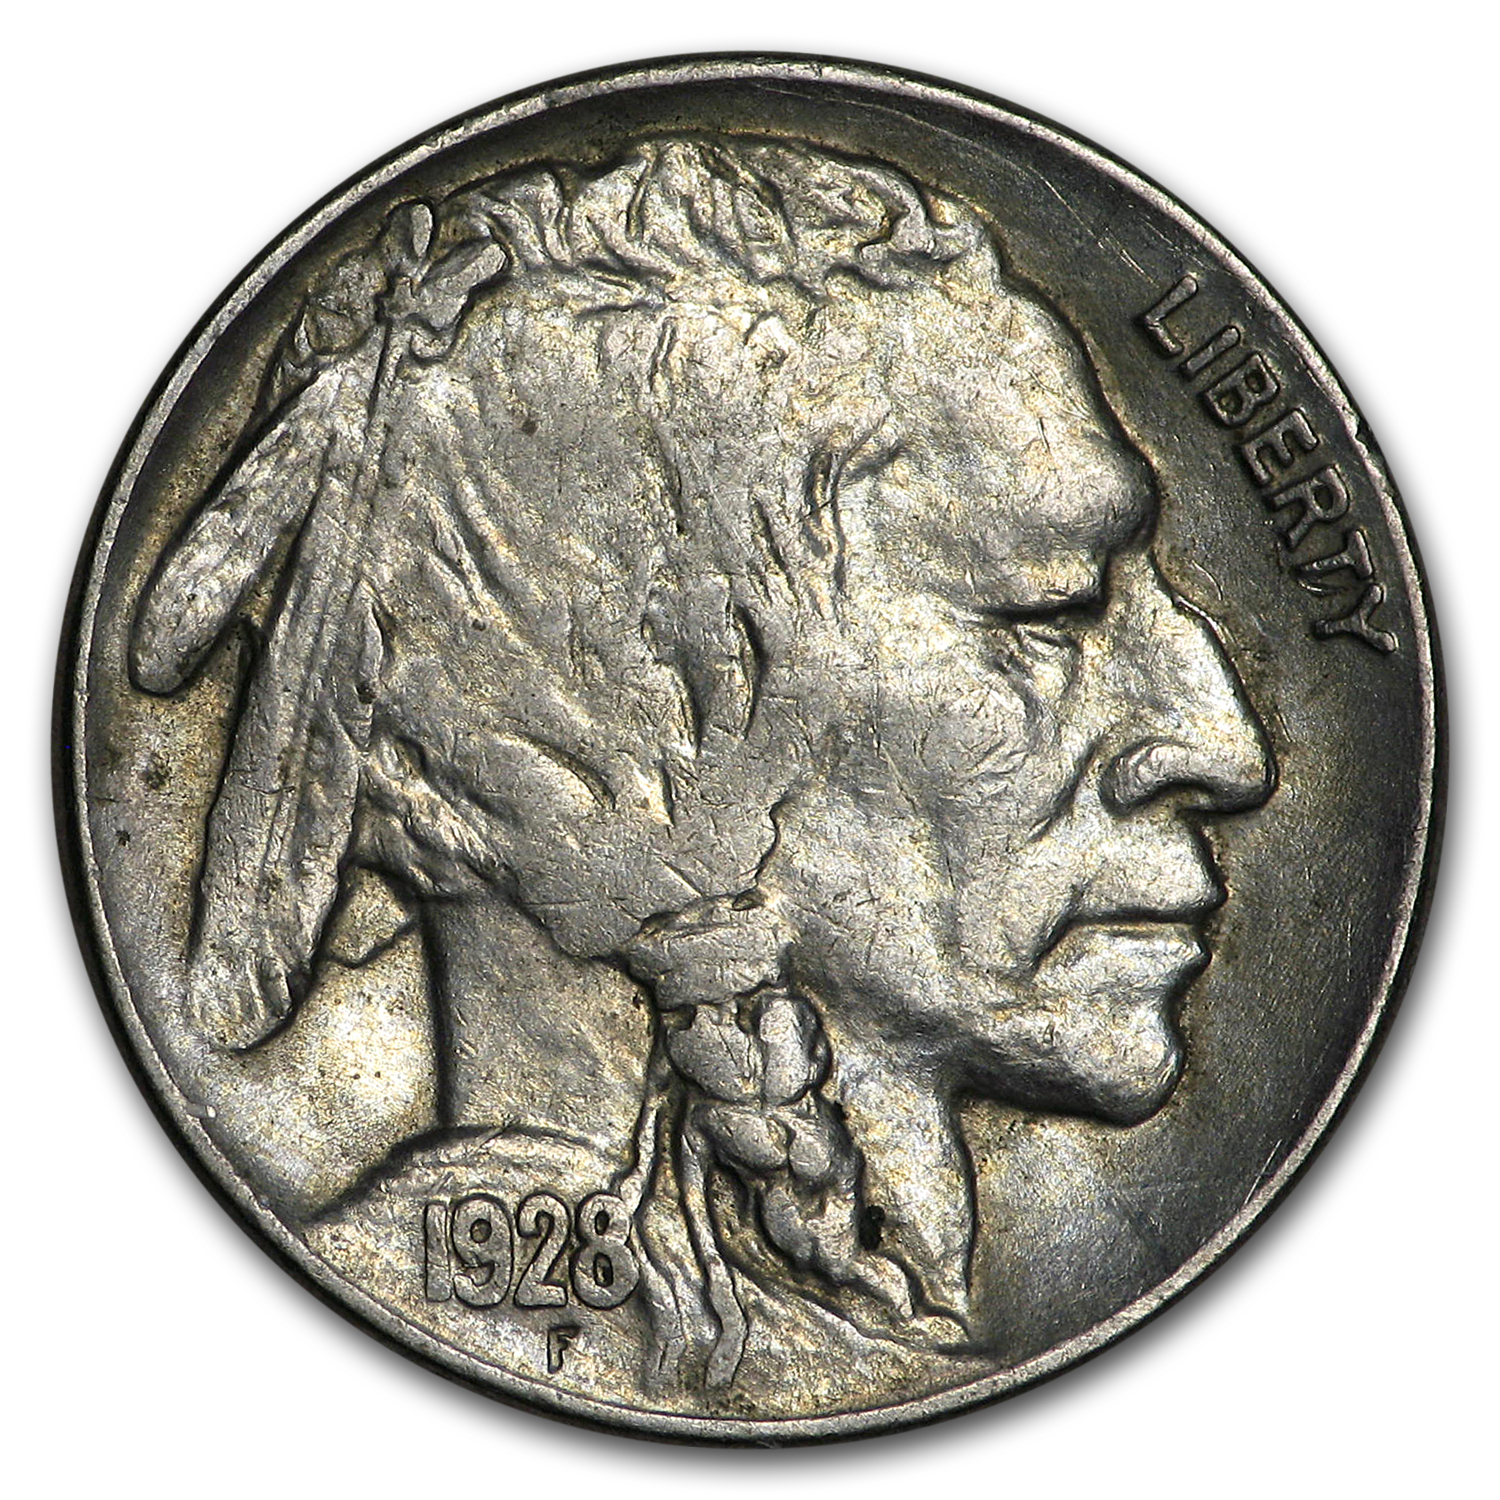 Buy 1928 Buffalo Nickel AU